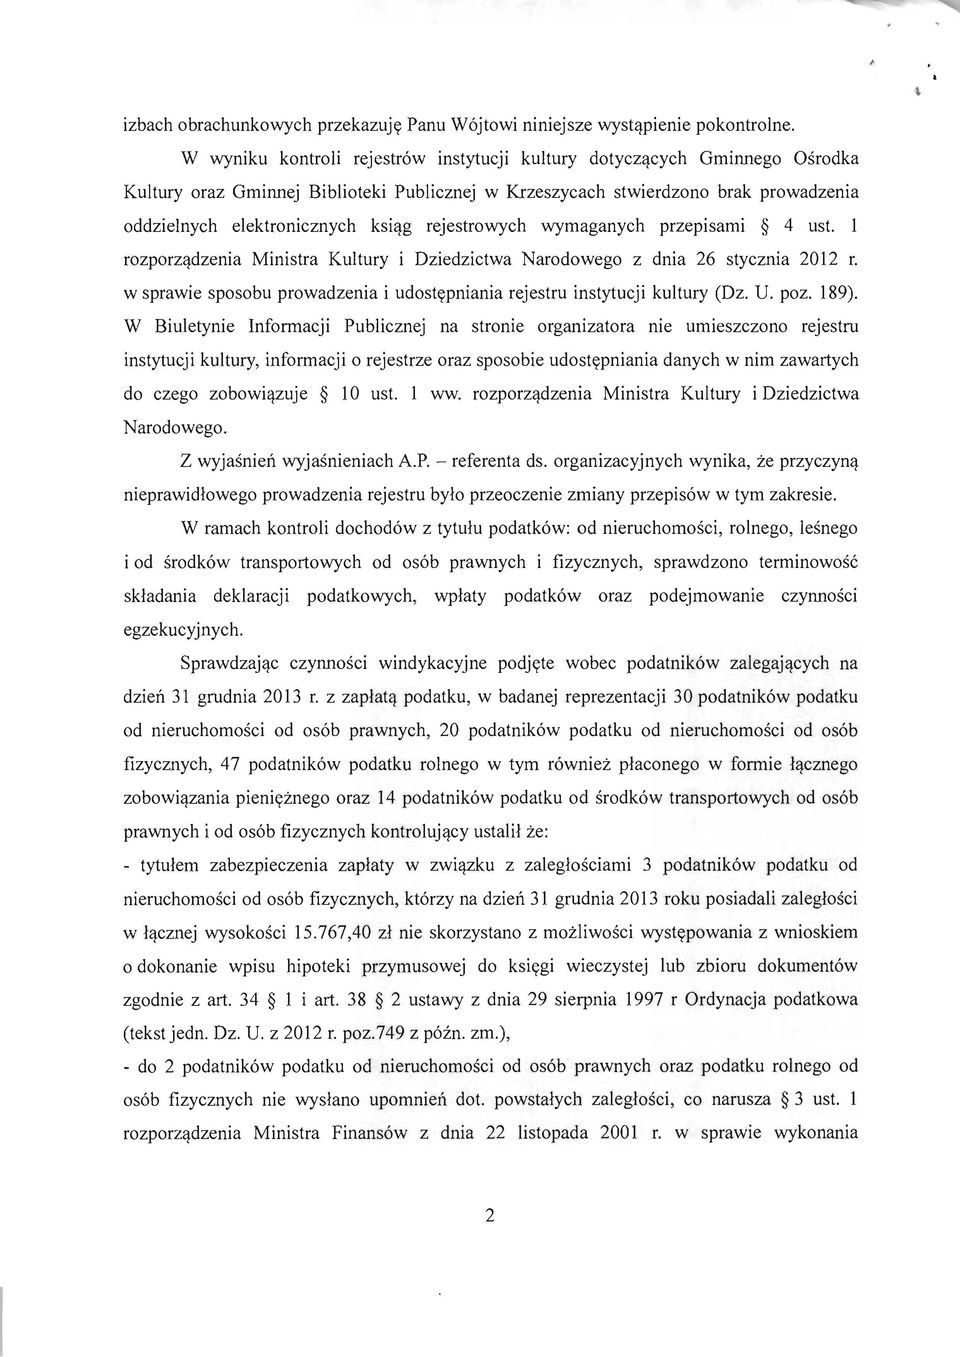 rejestrowych wymaganych przepisami 4 ust. rozporządzenia Ministra Kultury i Dziedzictwa Narodowego z dnia 26 stycznia 2012 r.